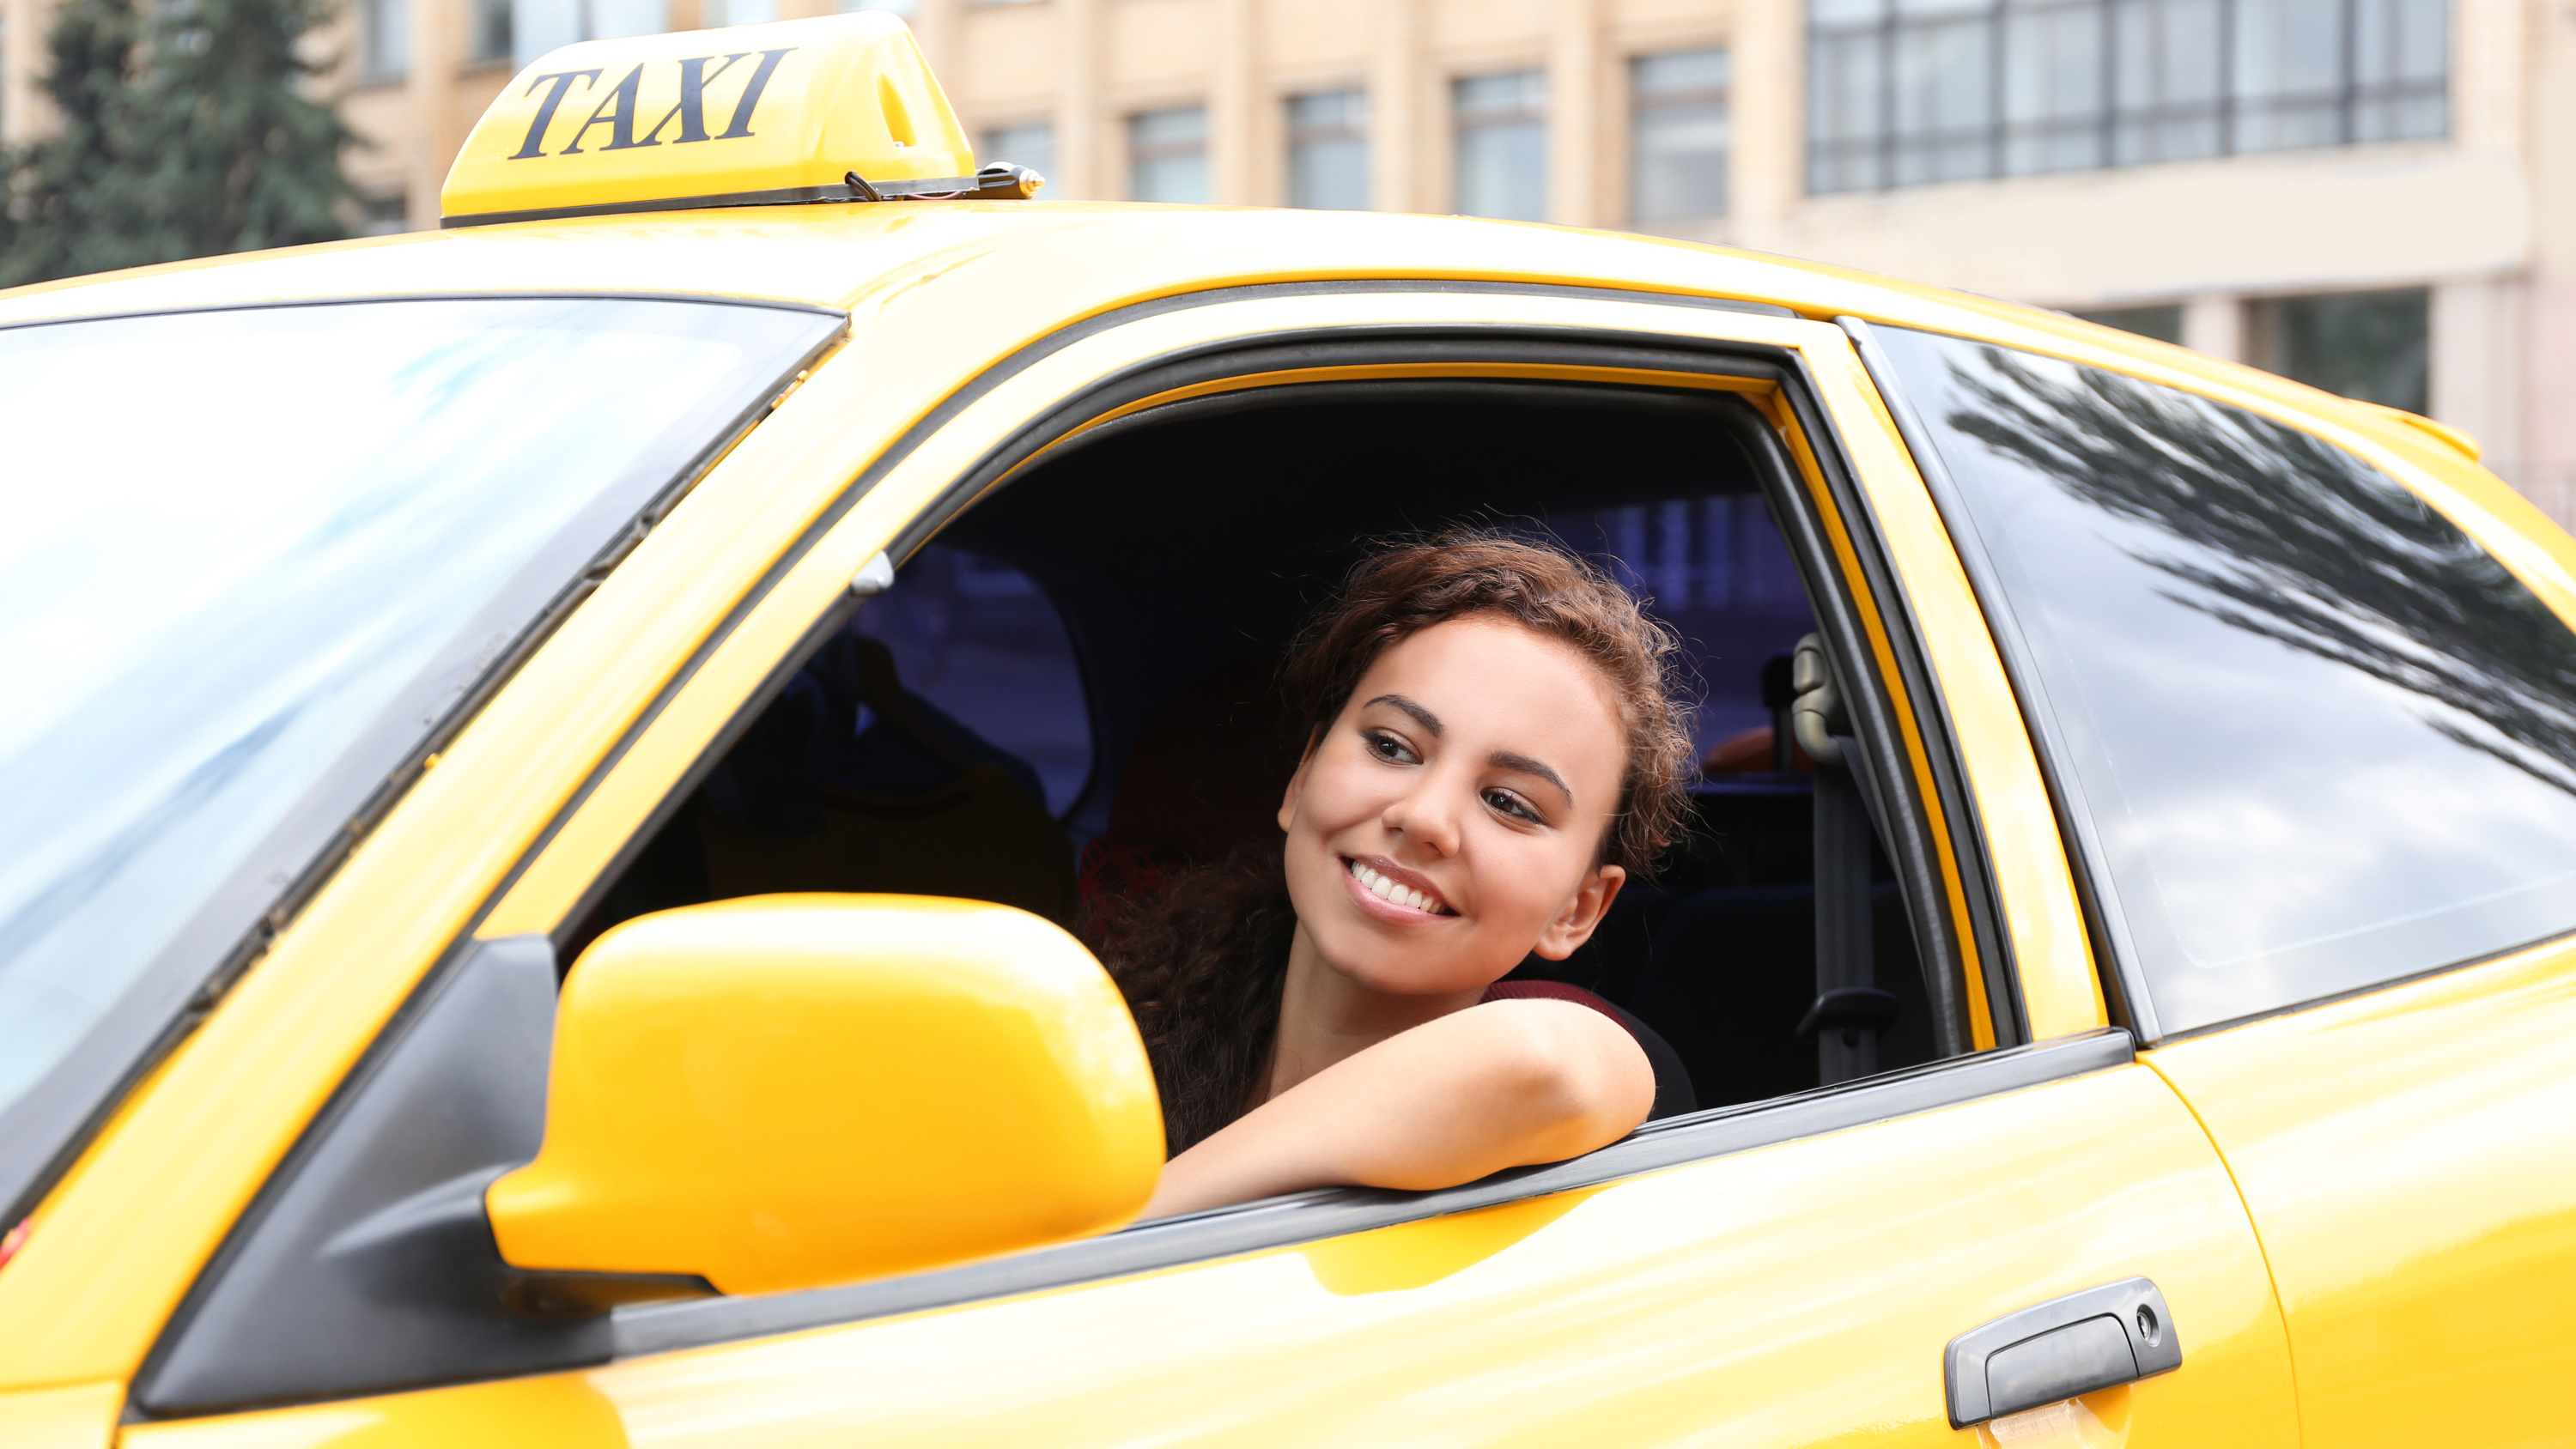 Последний водитель такси. Девушка в такси. Красивая девушка в такси. Водитель такси. Женщина водитель такси.